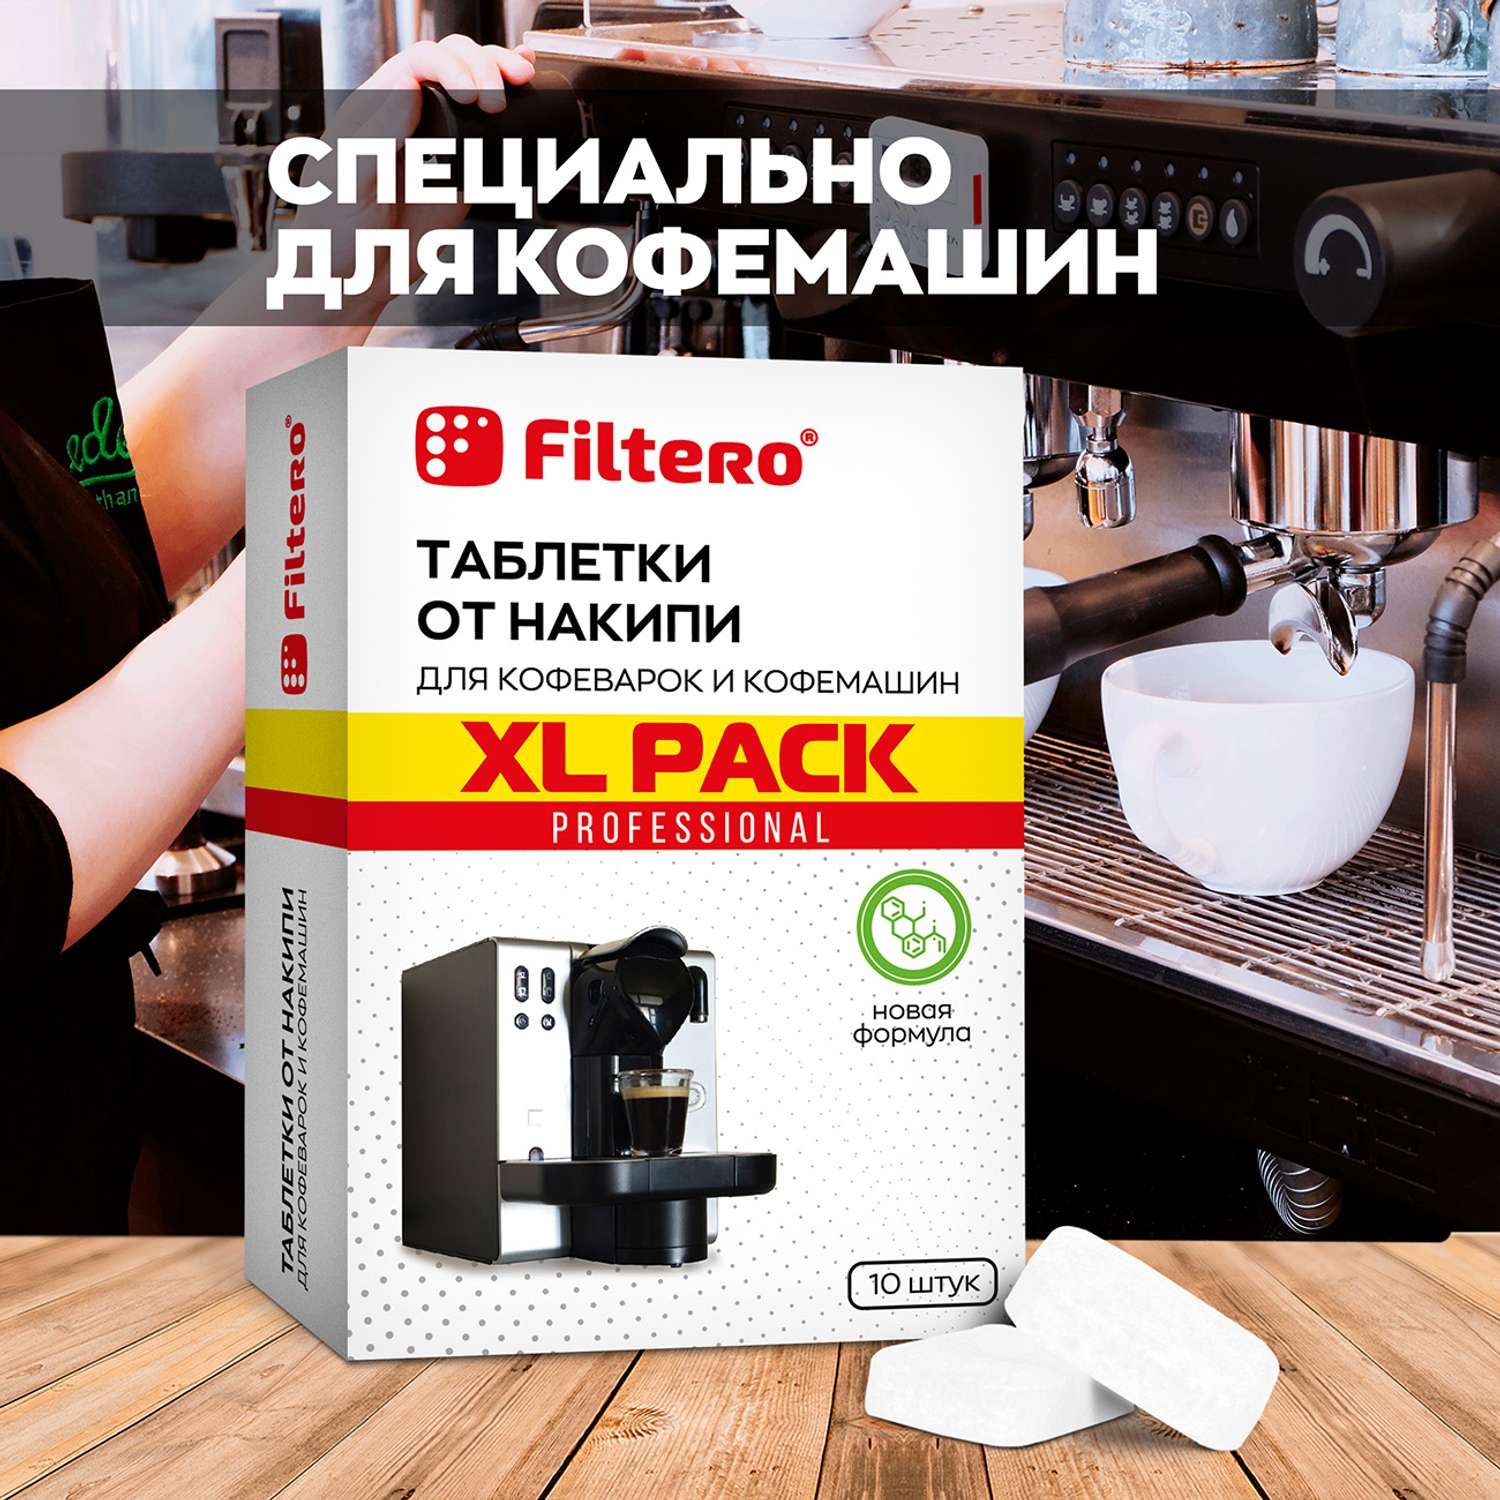 Таблетки Filtero от накипи для кофеварок и кофемашин 10 шт - фото 3